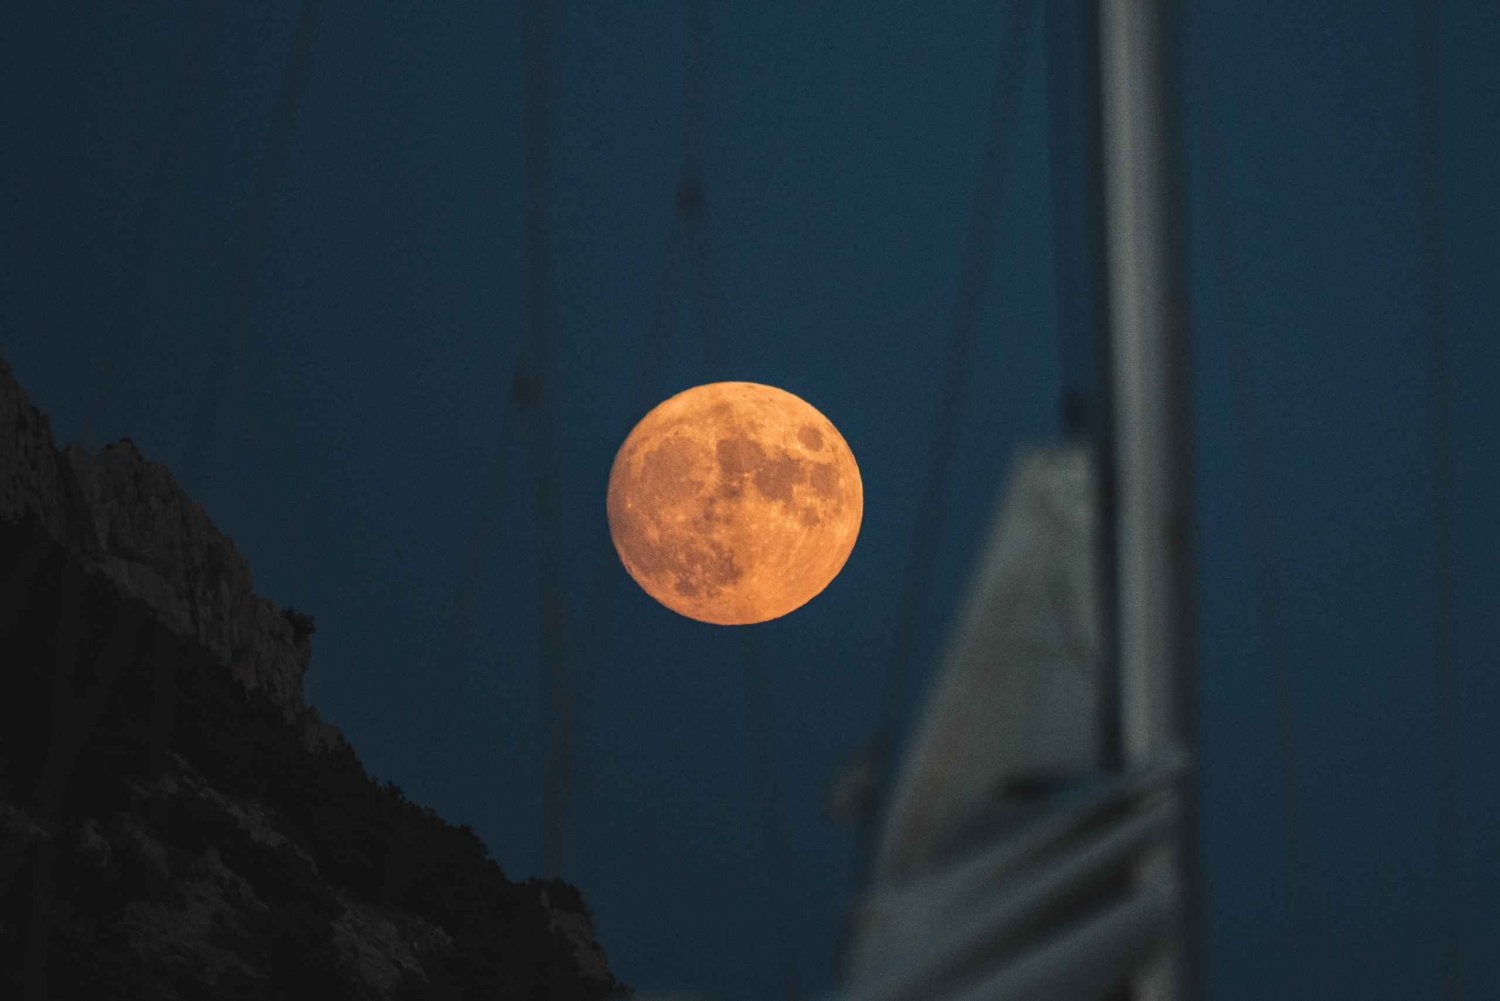 Sotogrande: volle maan op zee 2 uur